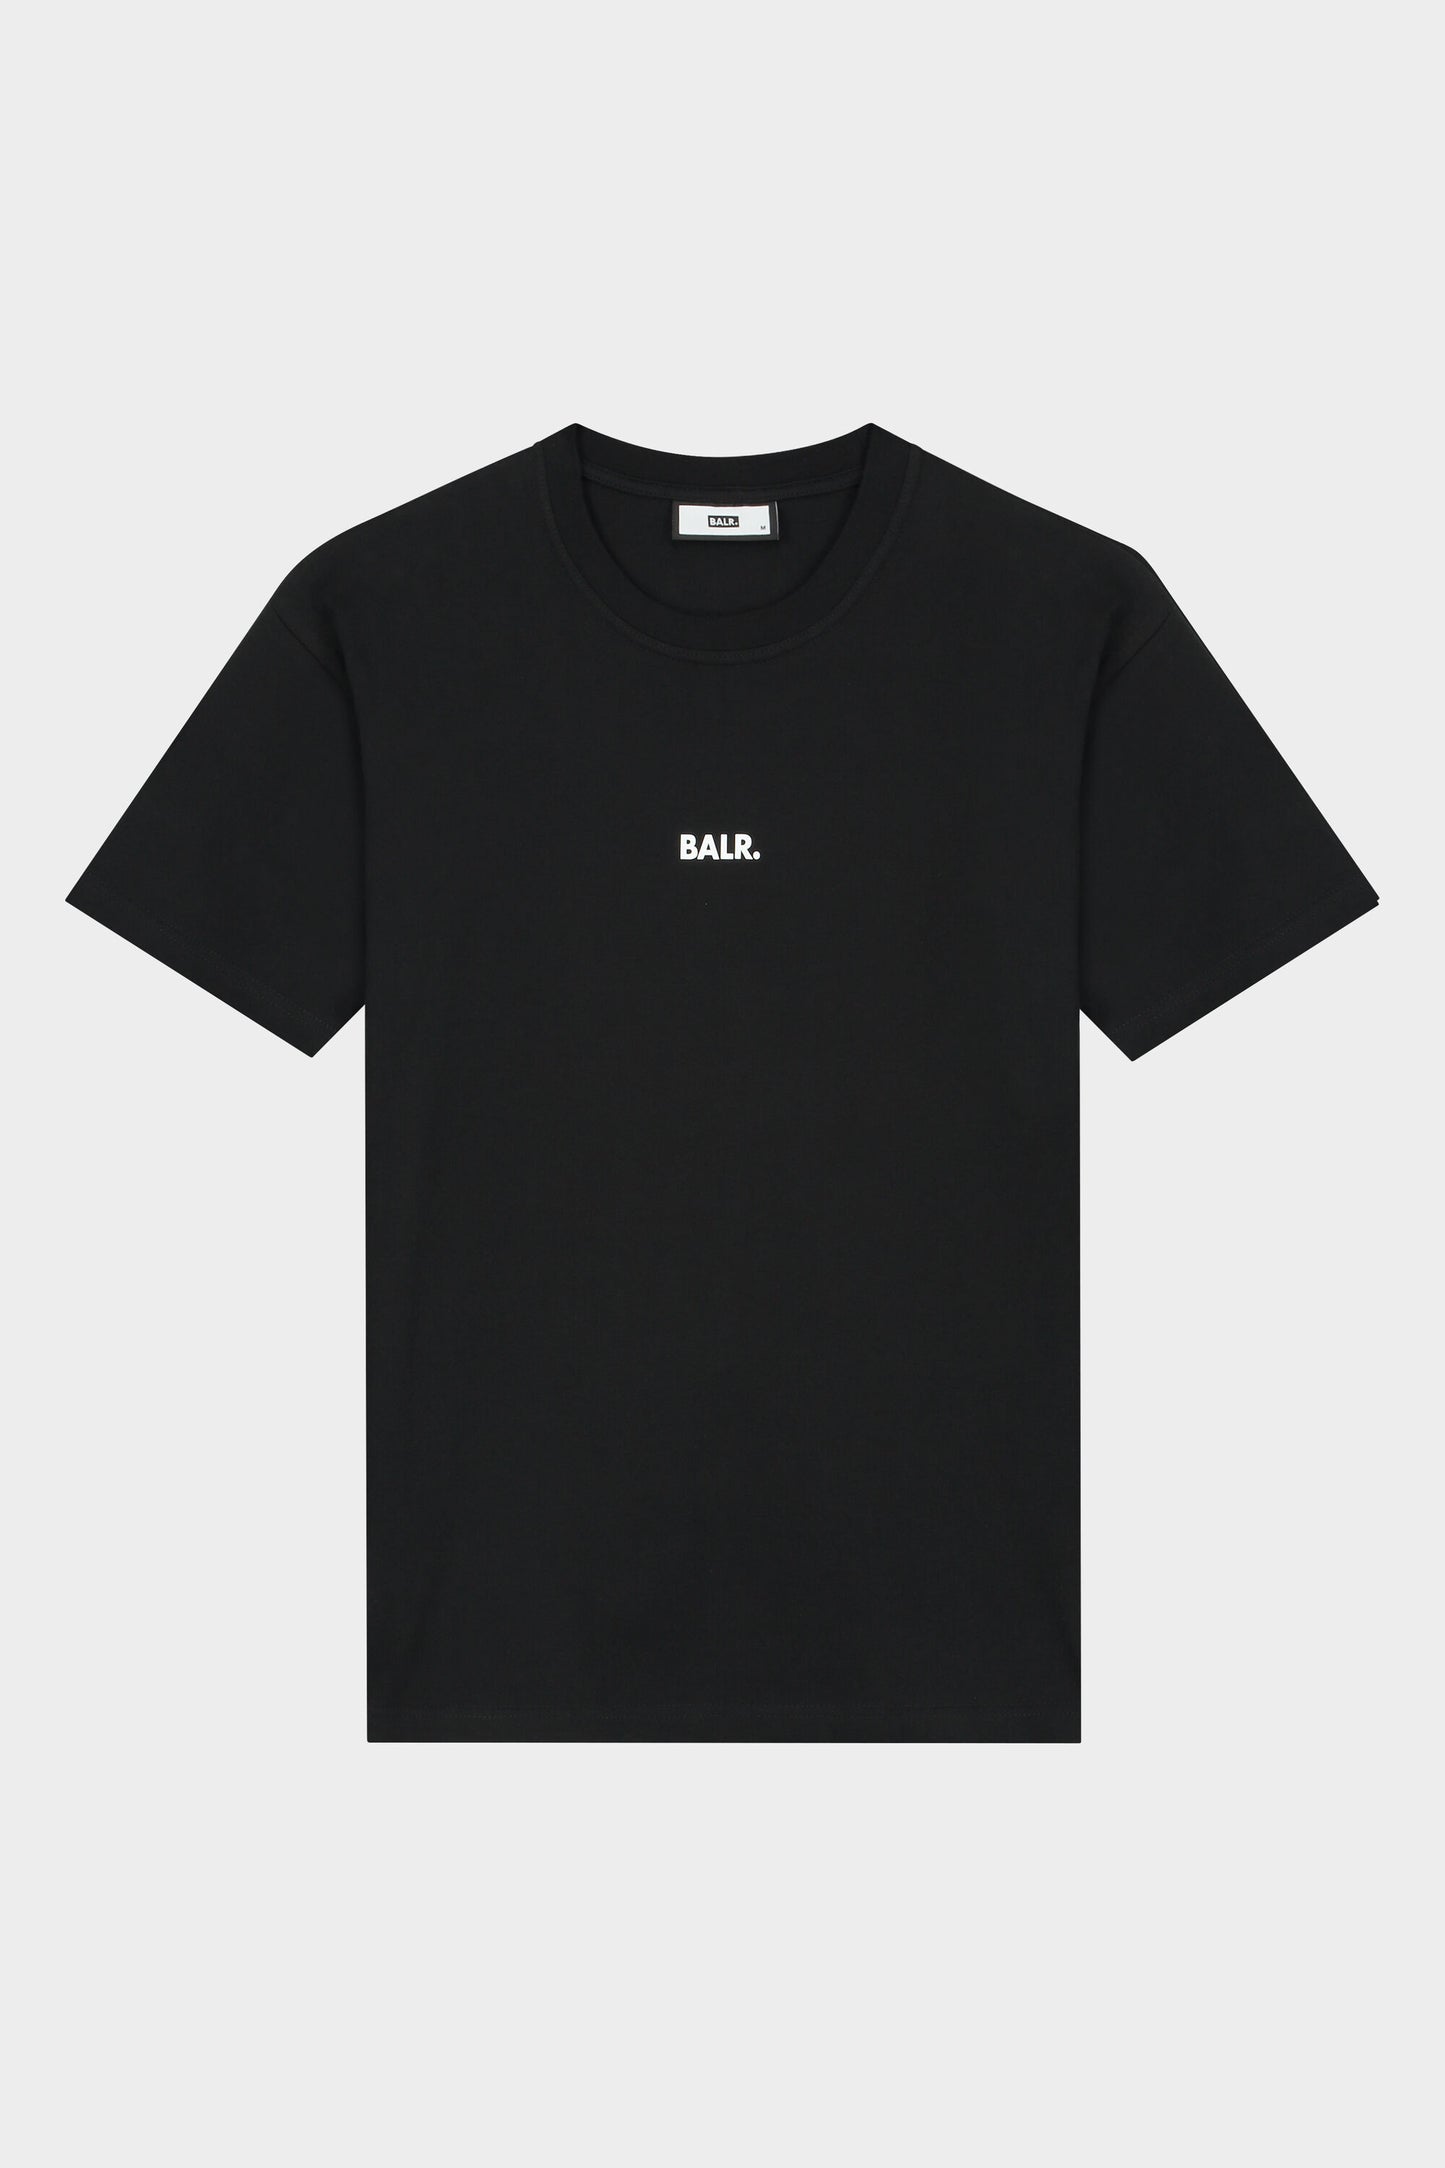 Max Loose Price Of Fame T-Shirt Jet Black